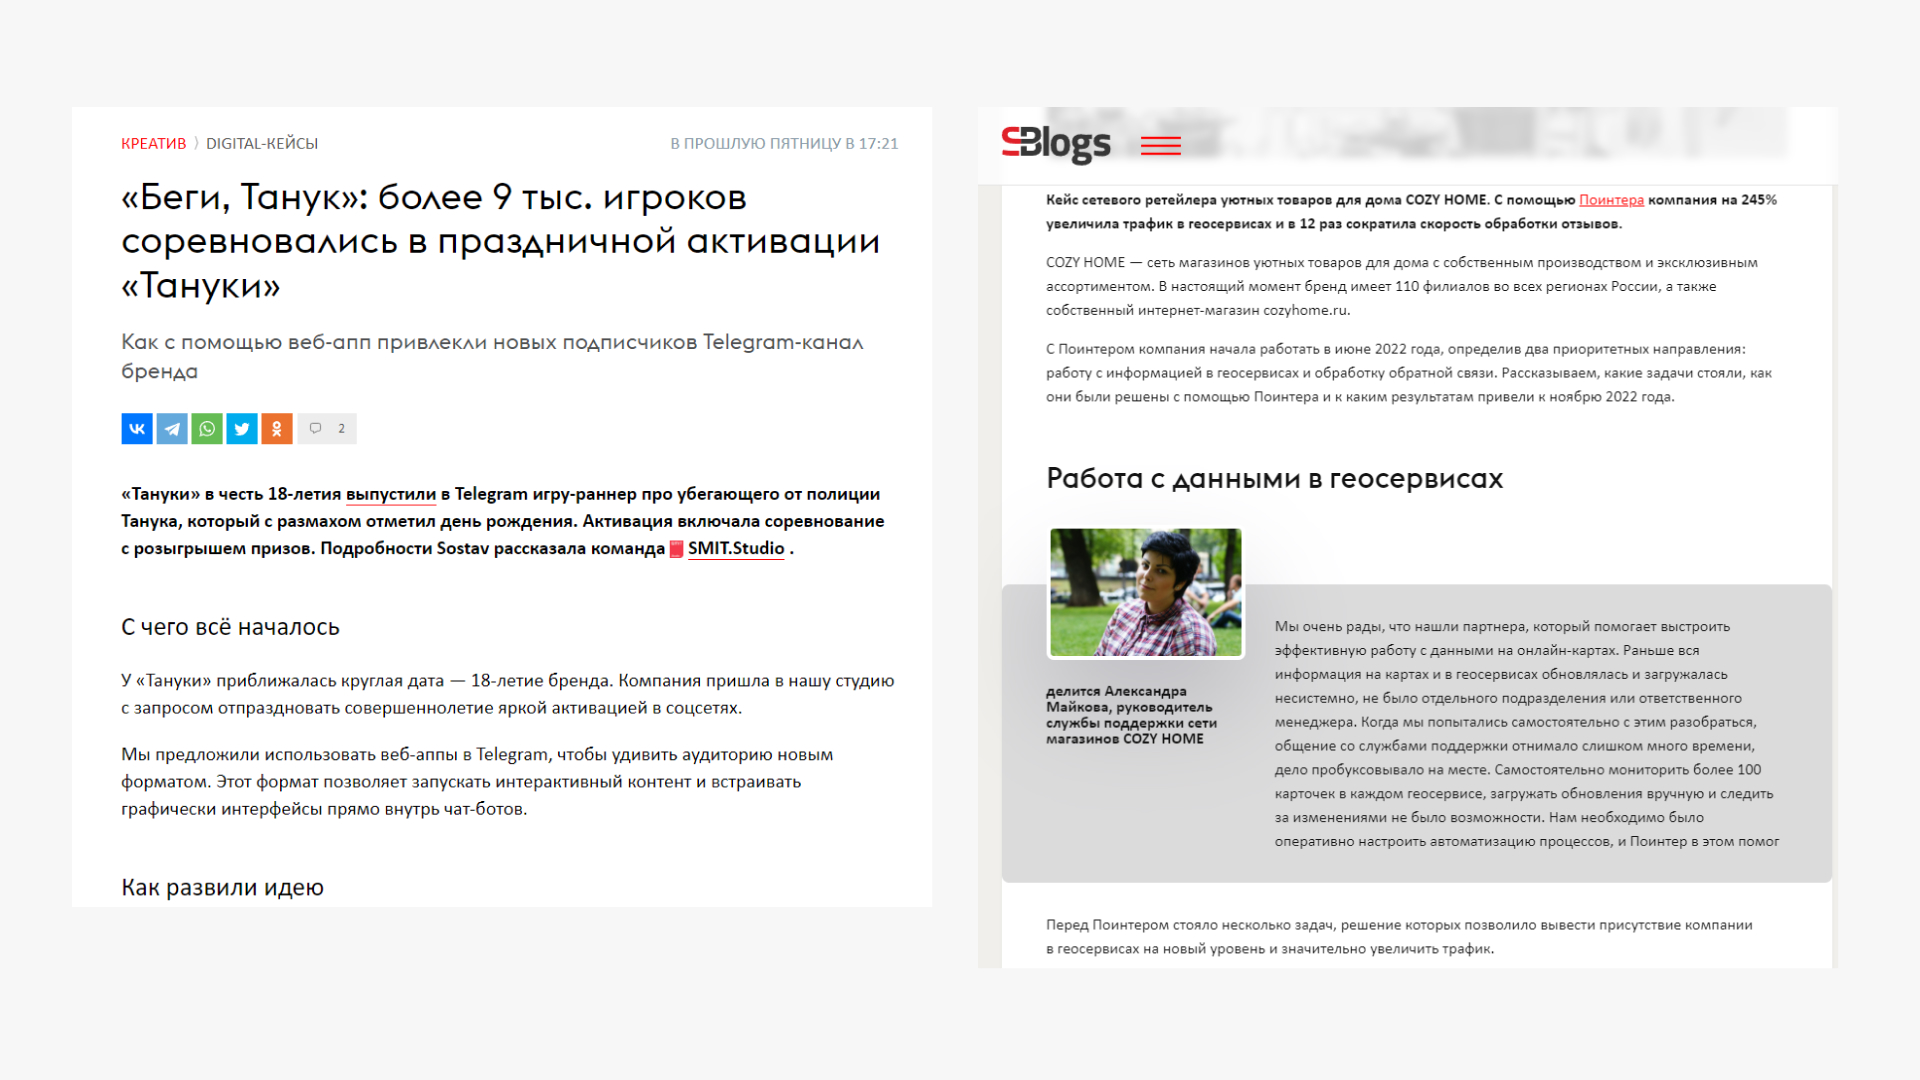 Кейс на главной странице Sostav и в разделе с блогами 